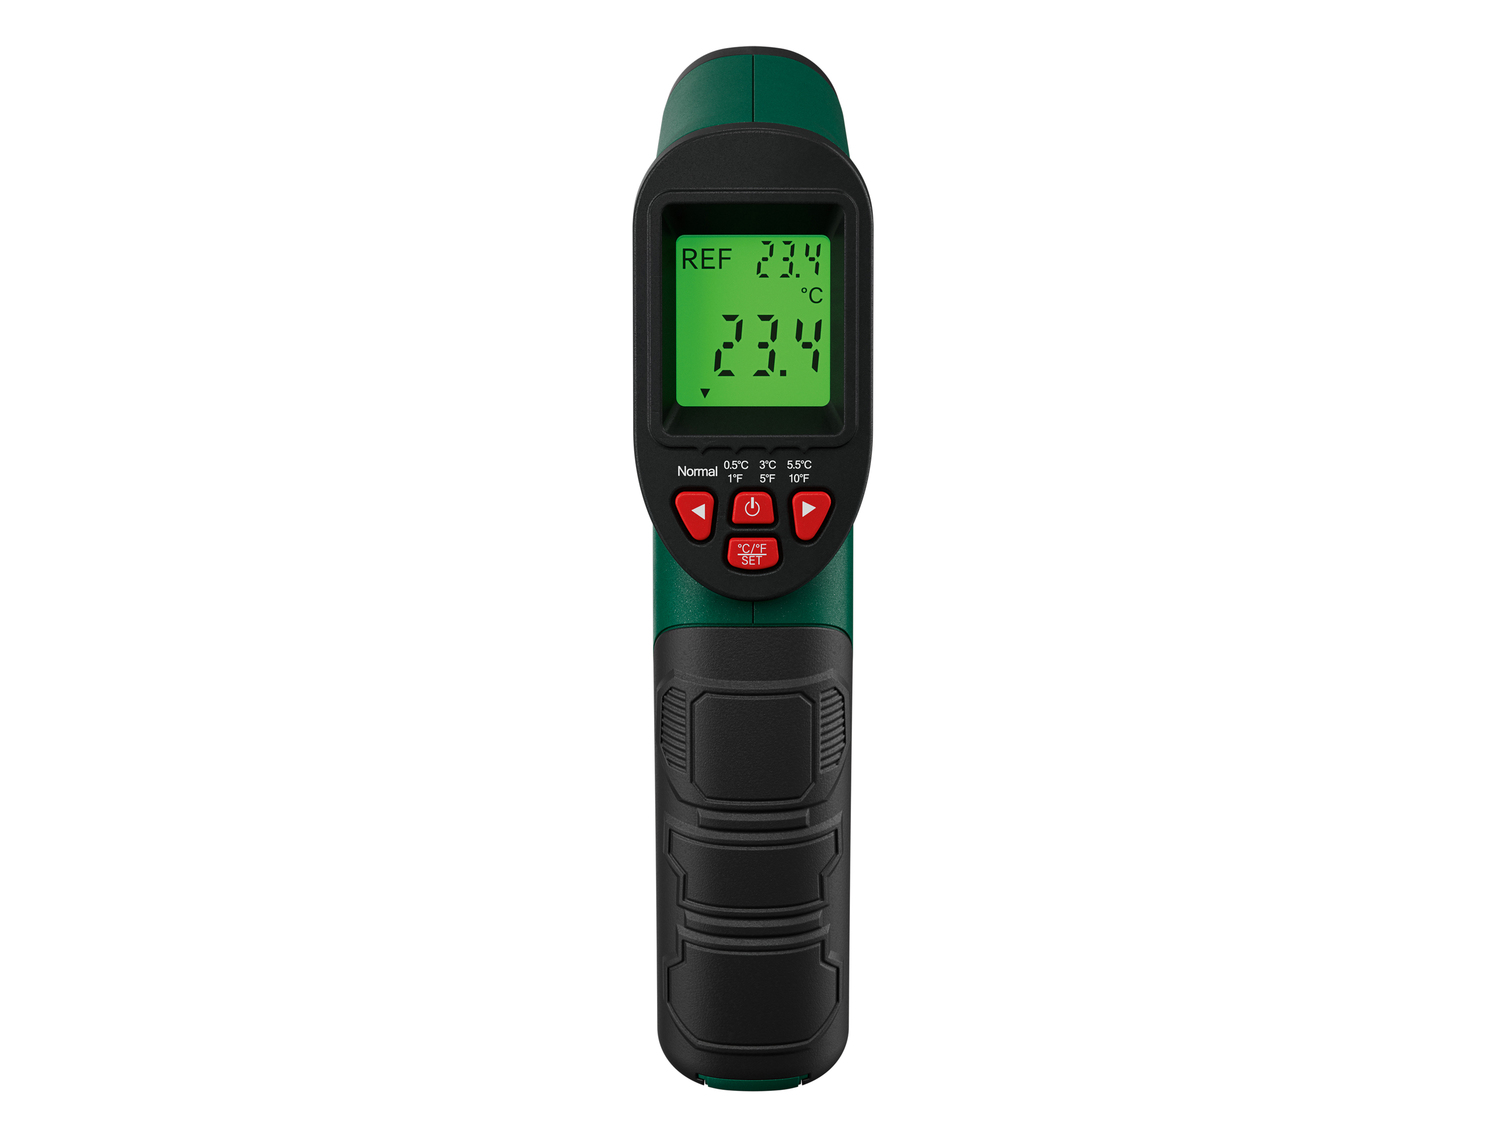 Misuratore di temperatura ad infrarossi Parkside, prezzo 19.99 &#8364; 
- Indicazione ...